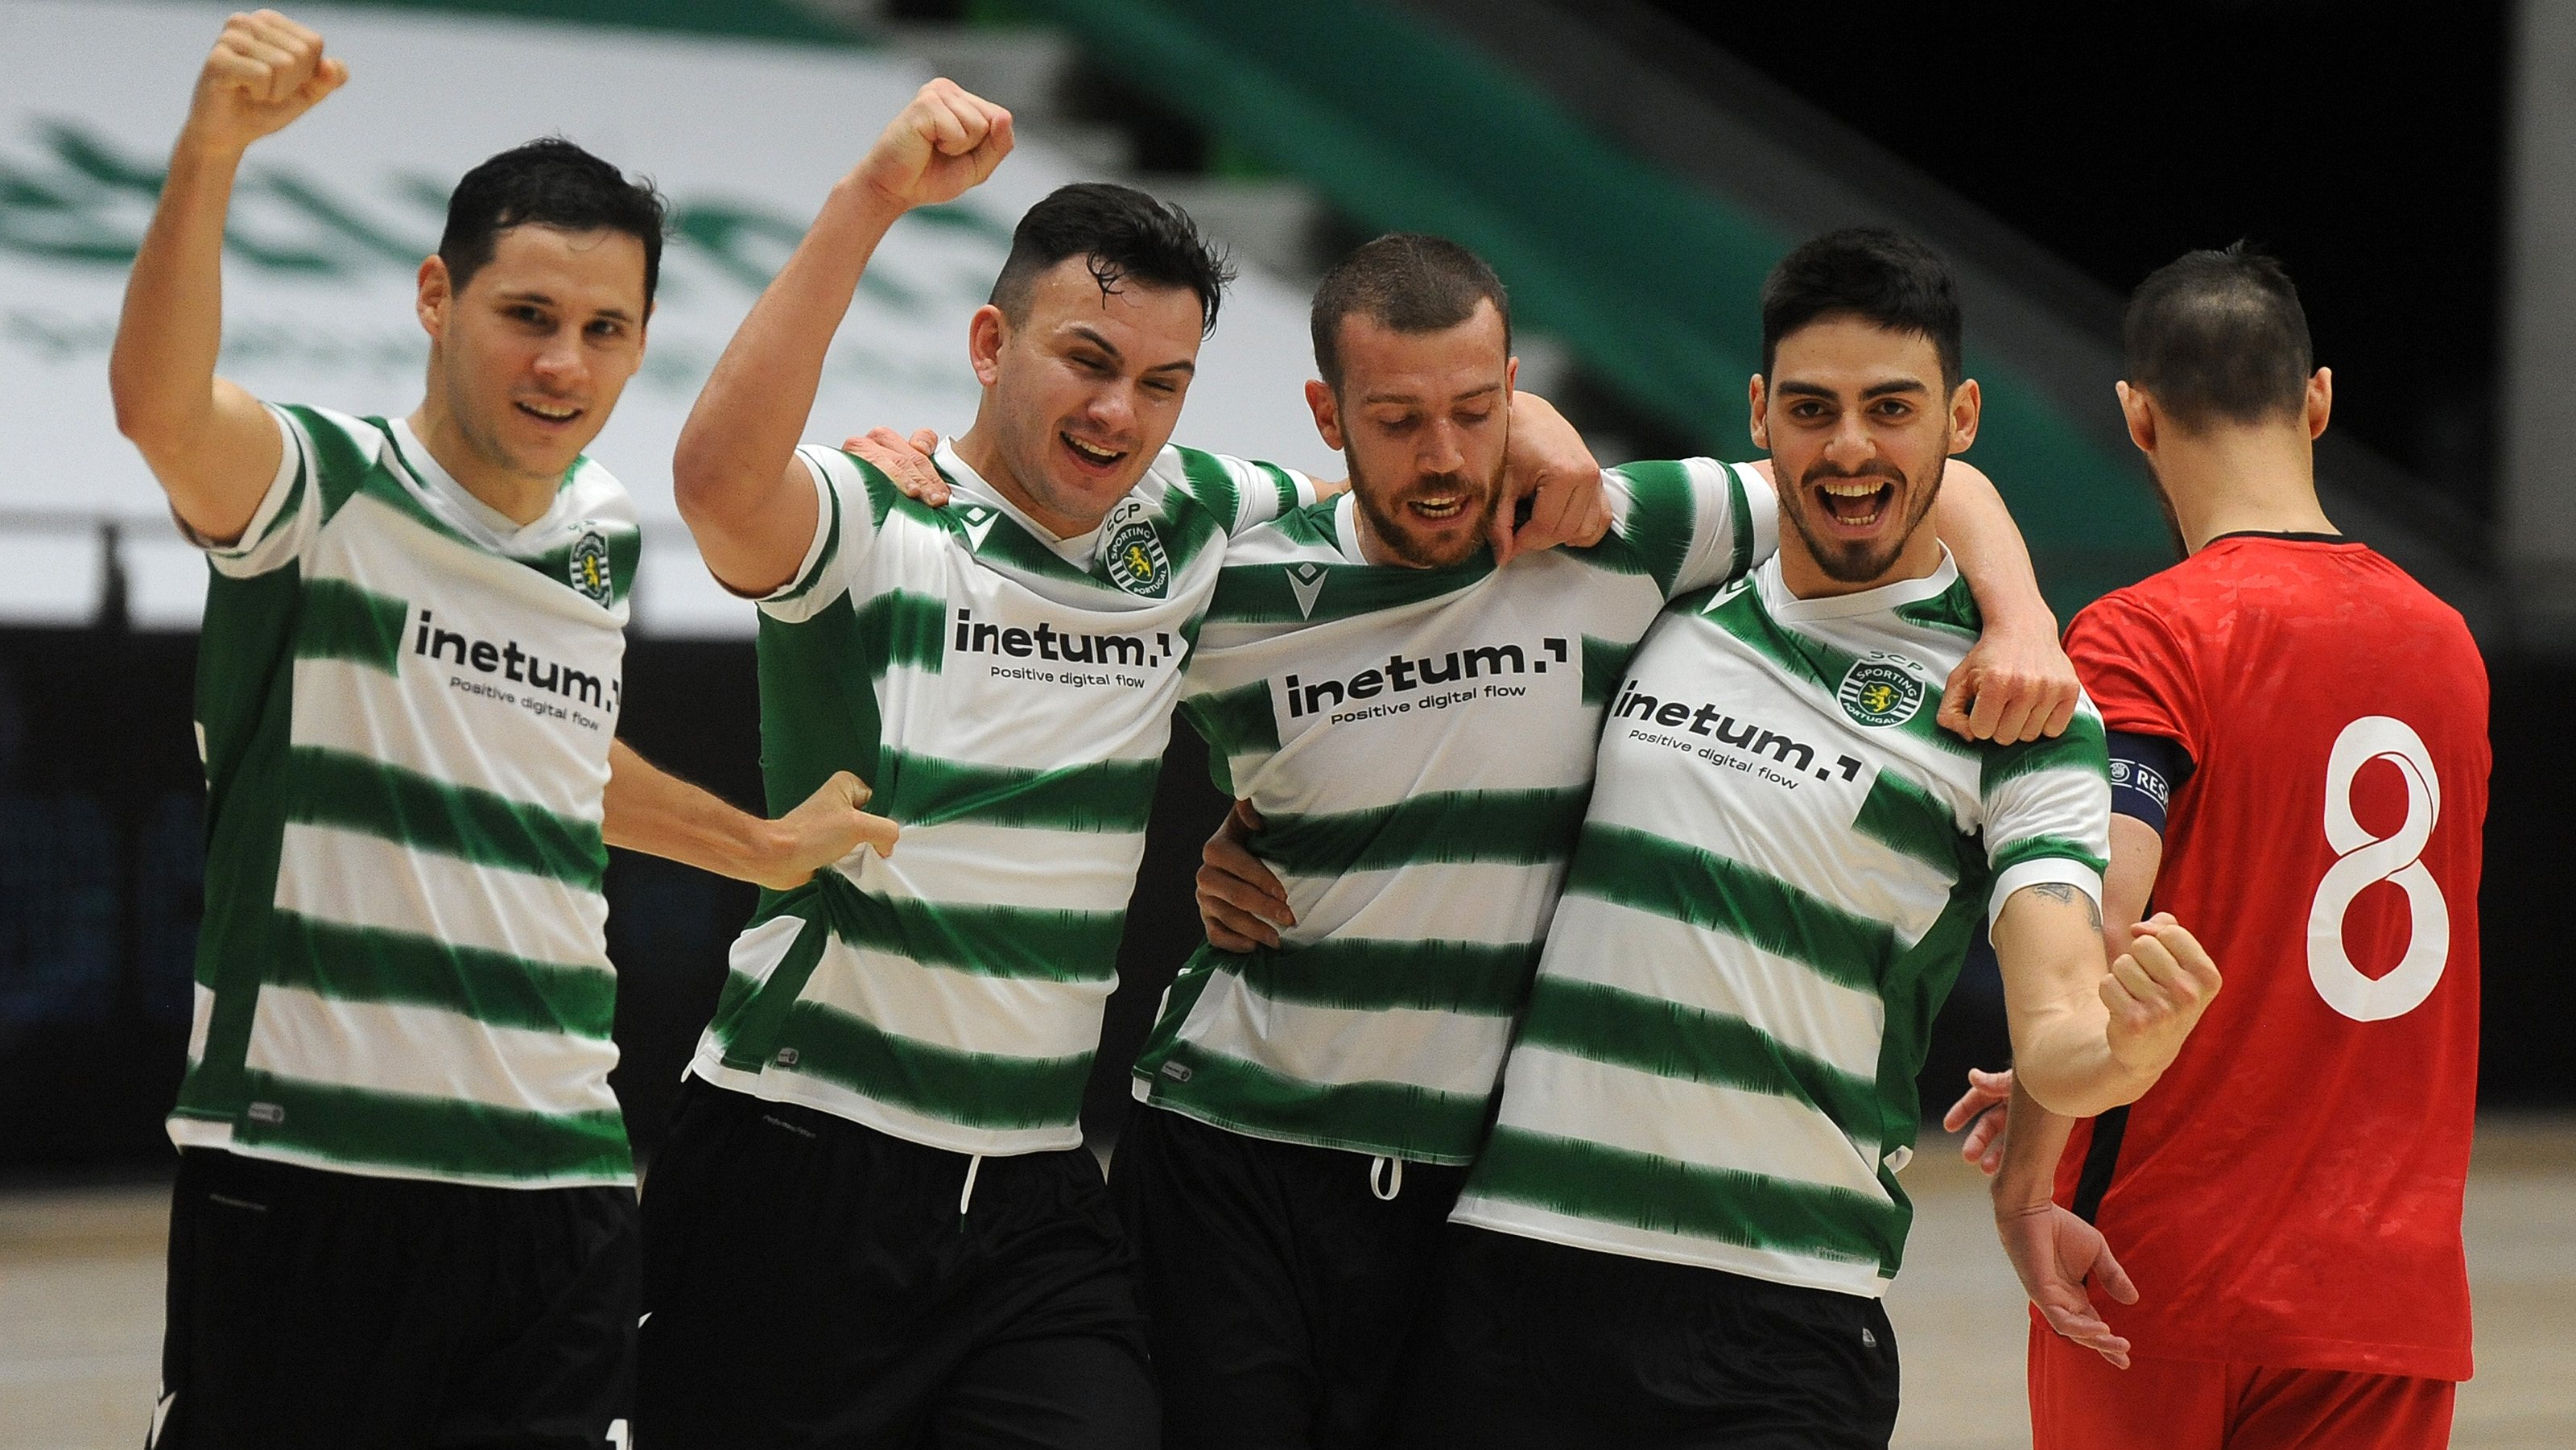 Alex Merlim, Rocha, Cavinato e Erick festejaram passagem às meias-finais da Liga dos Campeões de futsal em Zadar, na Croácia